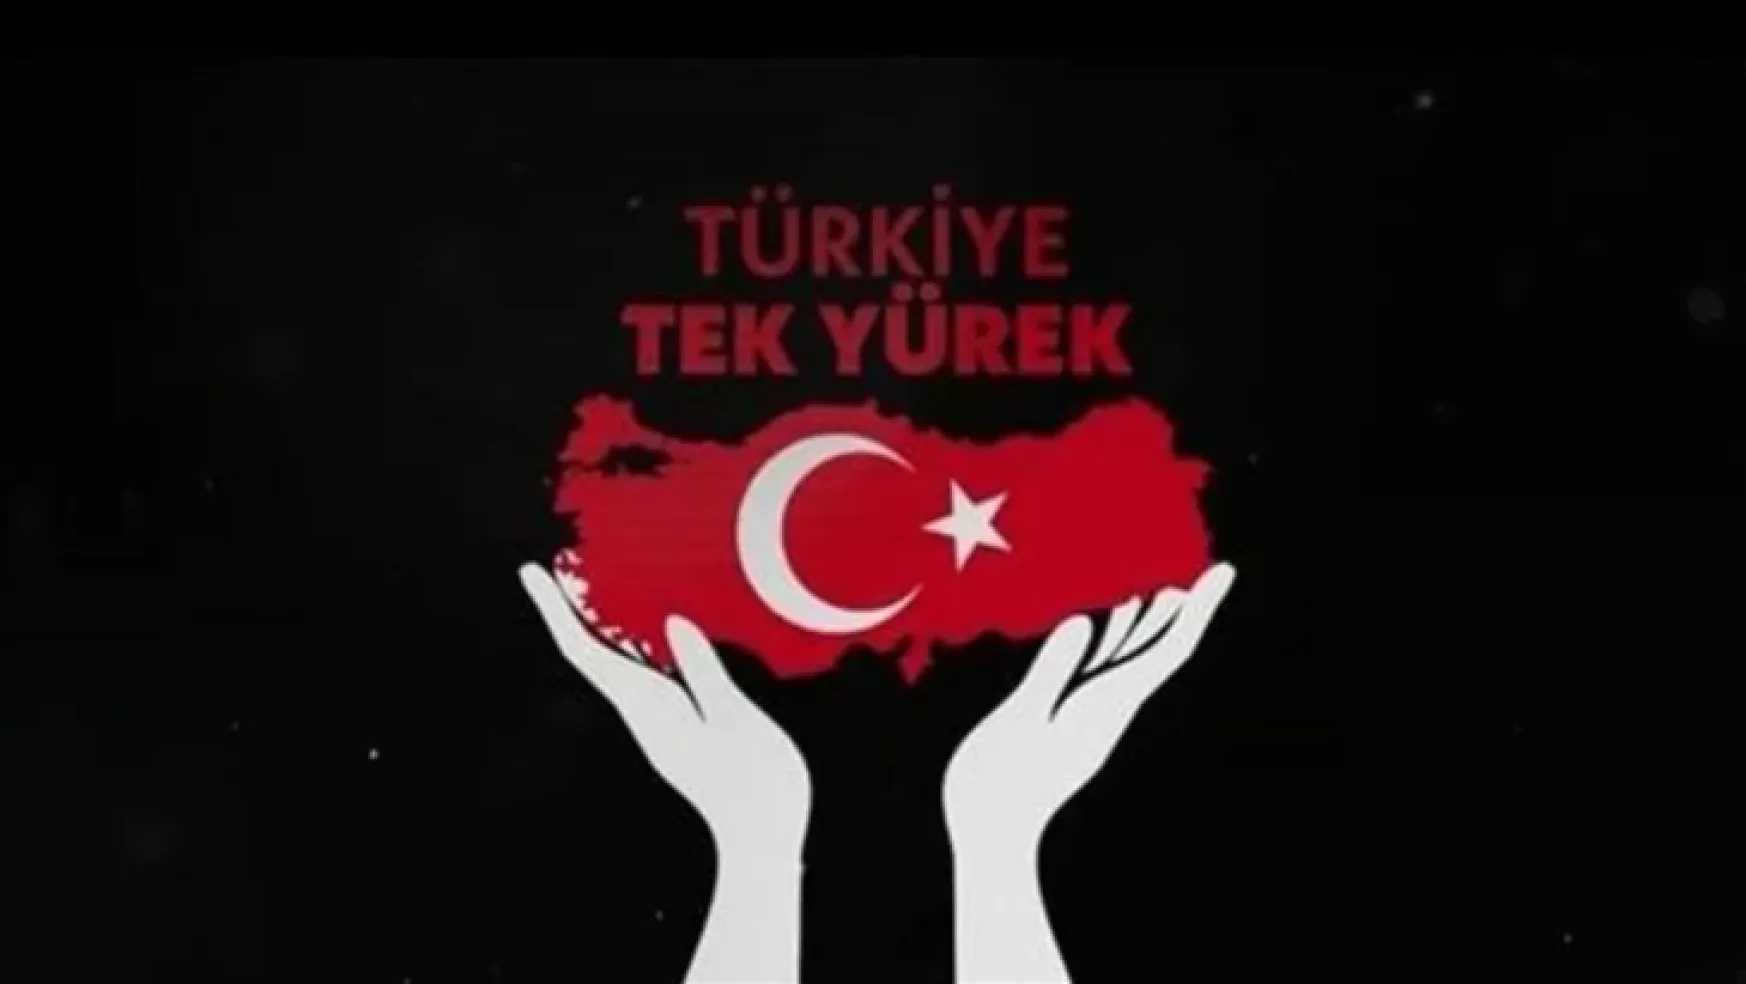 Türkiye Tek Yürek ortak yayınında yardım kampanyası!